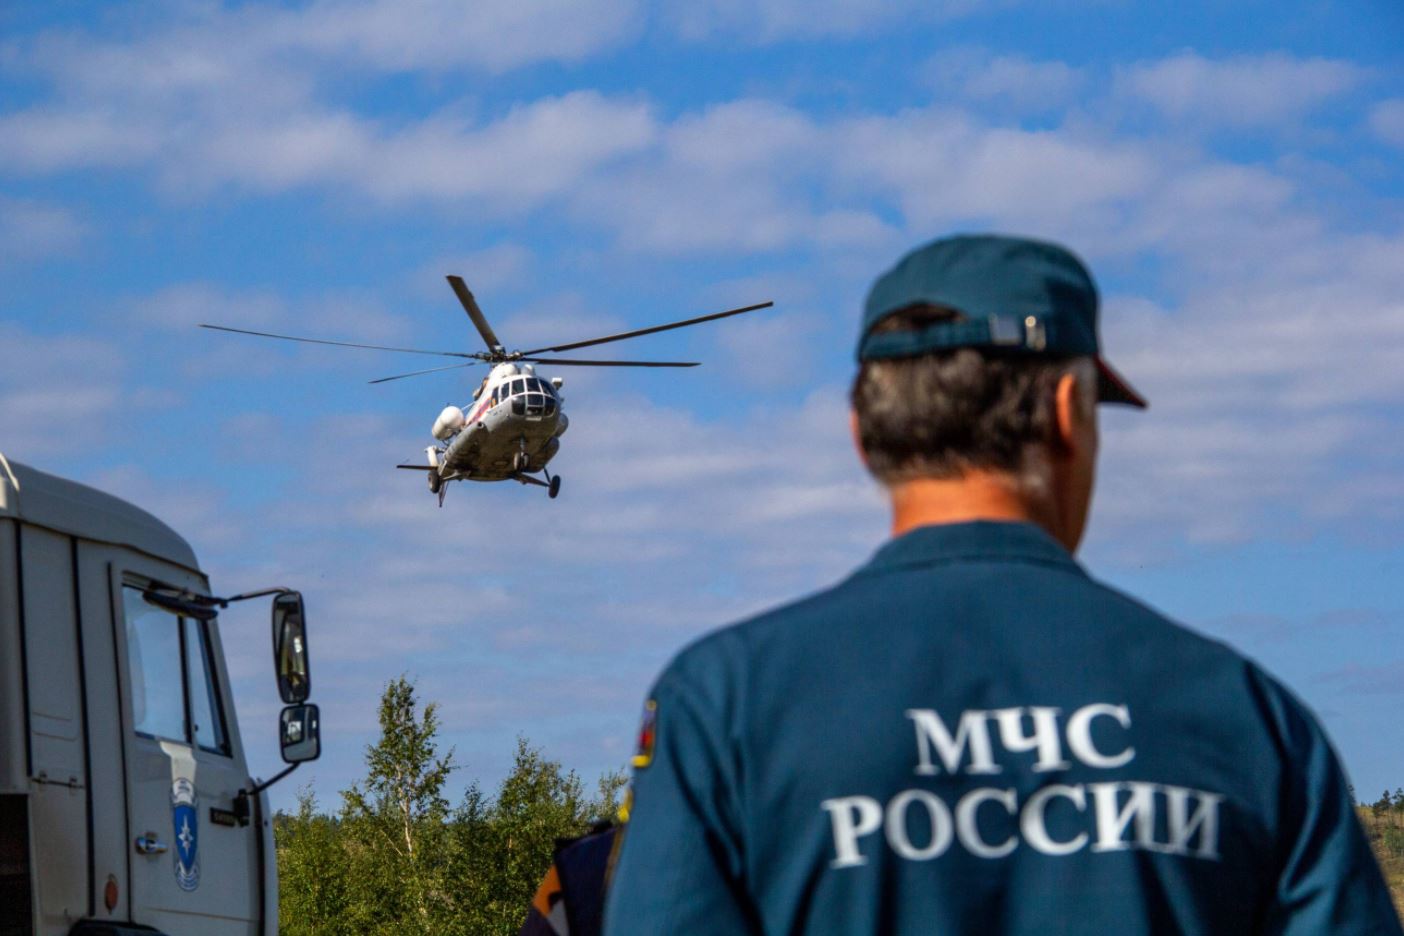 Бе-200 и Ми-8 работают на тушении пожаров в Усть-Майском районе Якутии